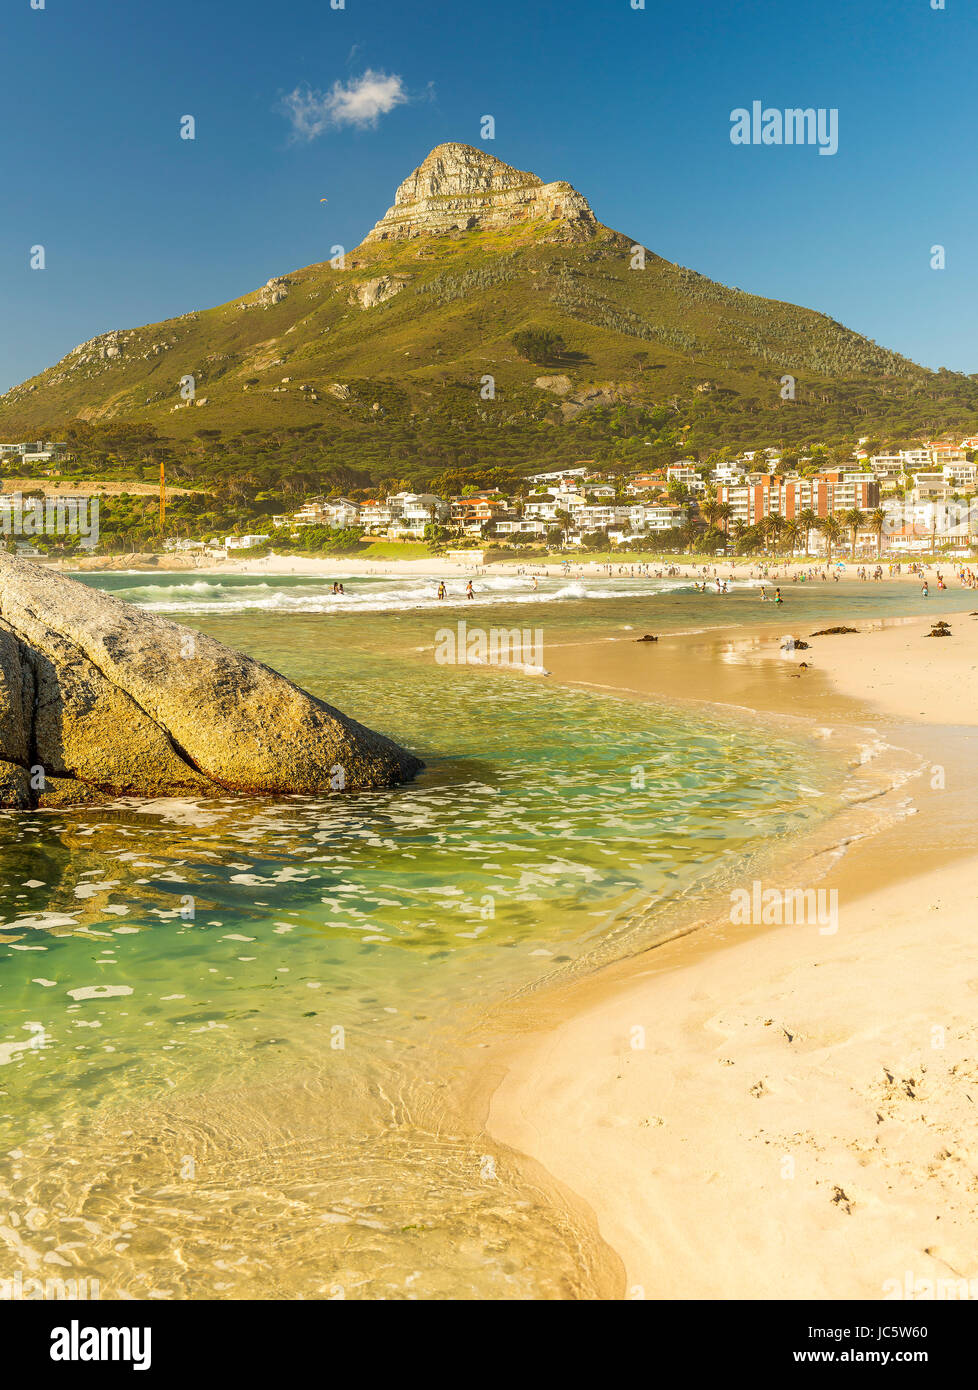 CAMPS BAY, AFRIQUE DU SUD - 5 octobre 2015 : personnes non identifiées sur la plage de Camps Bay à Cape Town, Afrique du Sud, avec vue sur Signal Hill. Banque D'Images